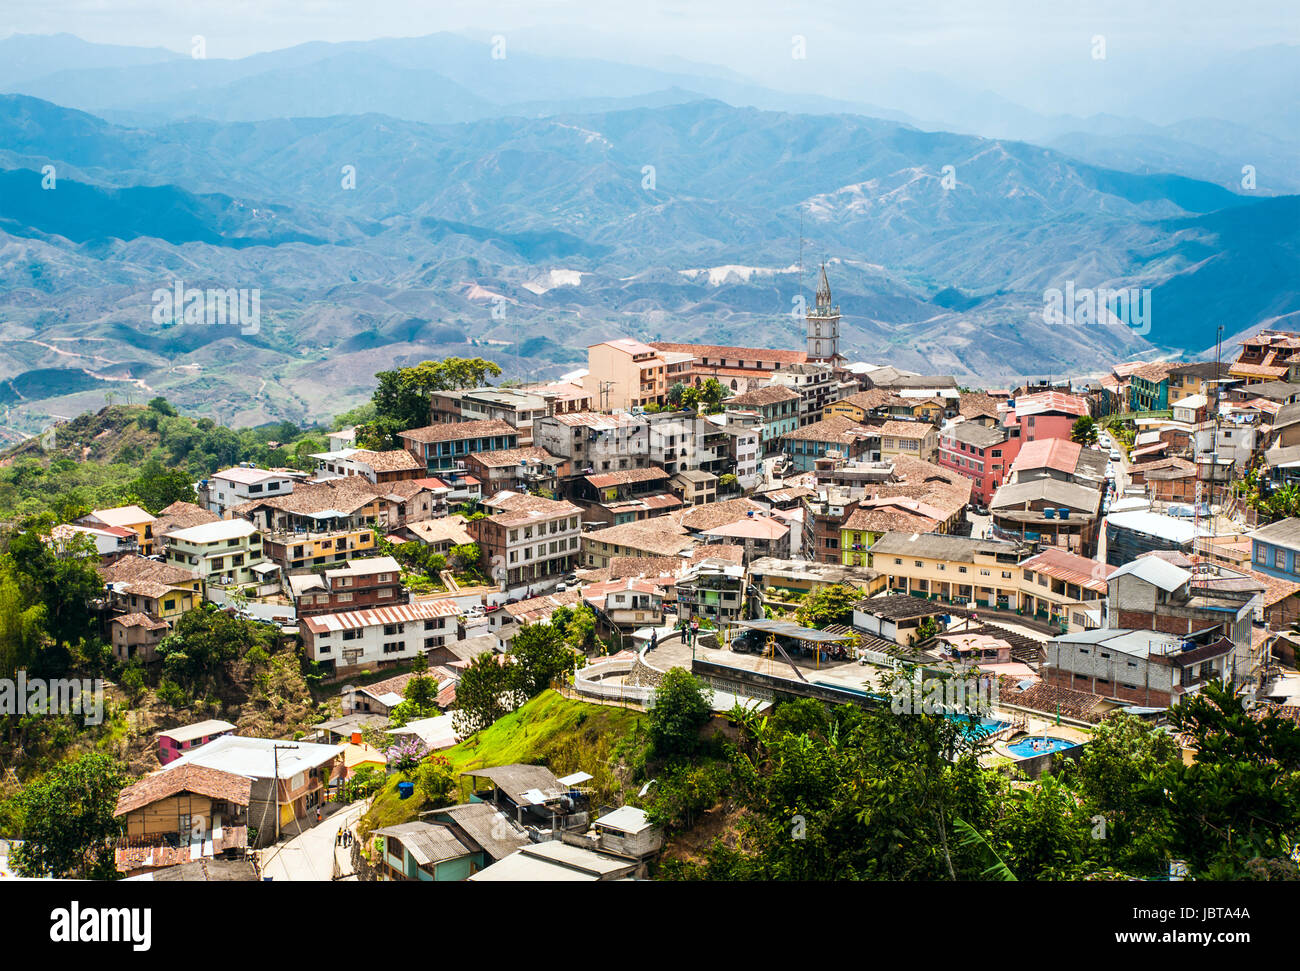 Zaruma - Stadt in den Anden, Ecuador. In der südlichen Provinz von El Oro (das bedeutet buchstäblich "das Gold") im westlichen Bereich der Anden gelegene ist Zaruma eine schöne Hügel Stadt mit steilen verdrehten Straßen, bemalte Holzhäuser und fabelhafte Aussicht auf die umliegende Landschaft Stockfoto